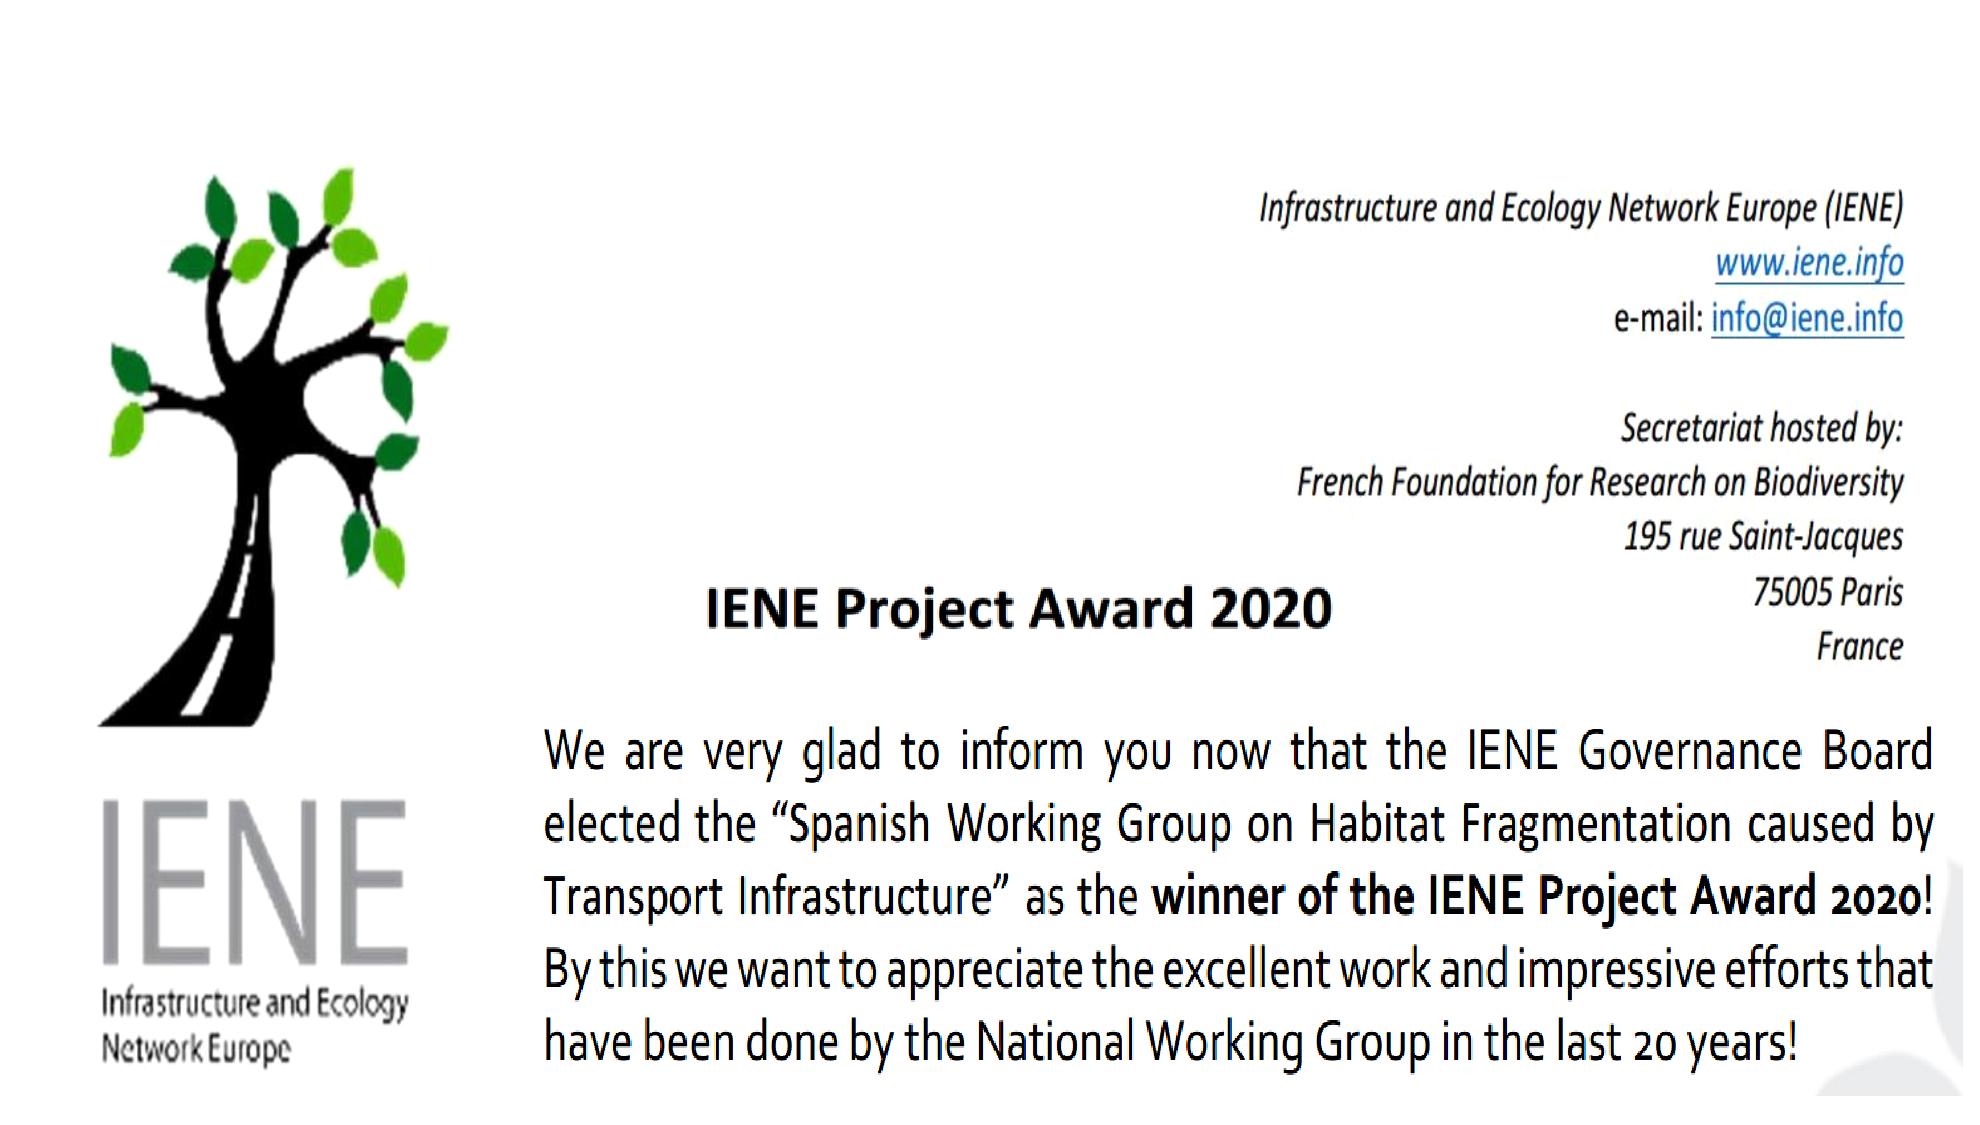 Premio de la organización Infrastructure and Ecology Network Europe (IENE) 2020